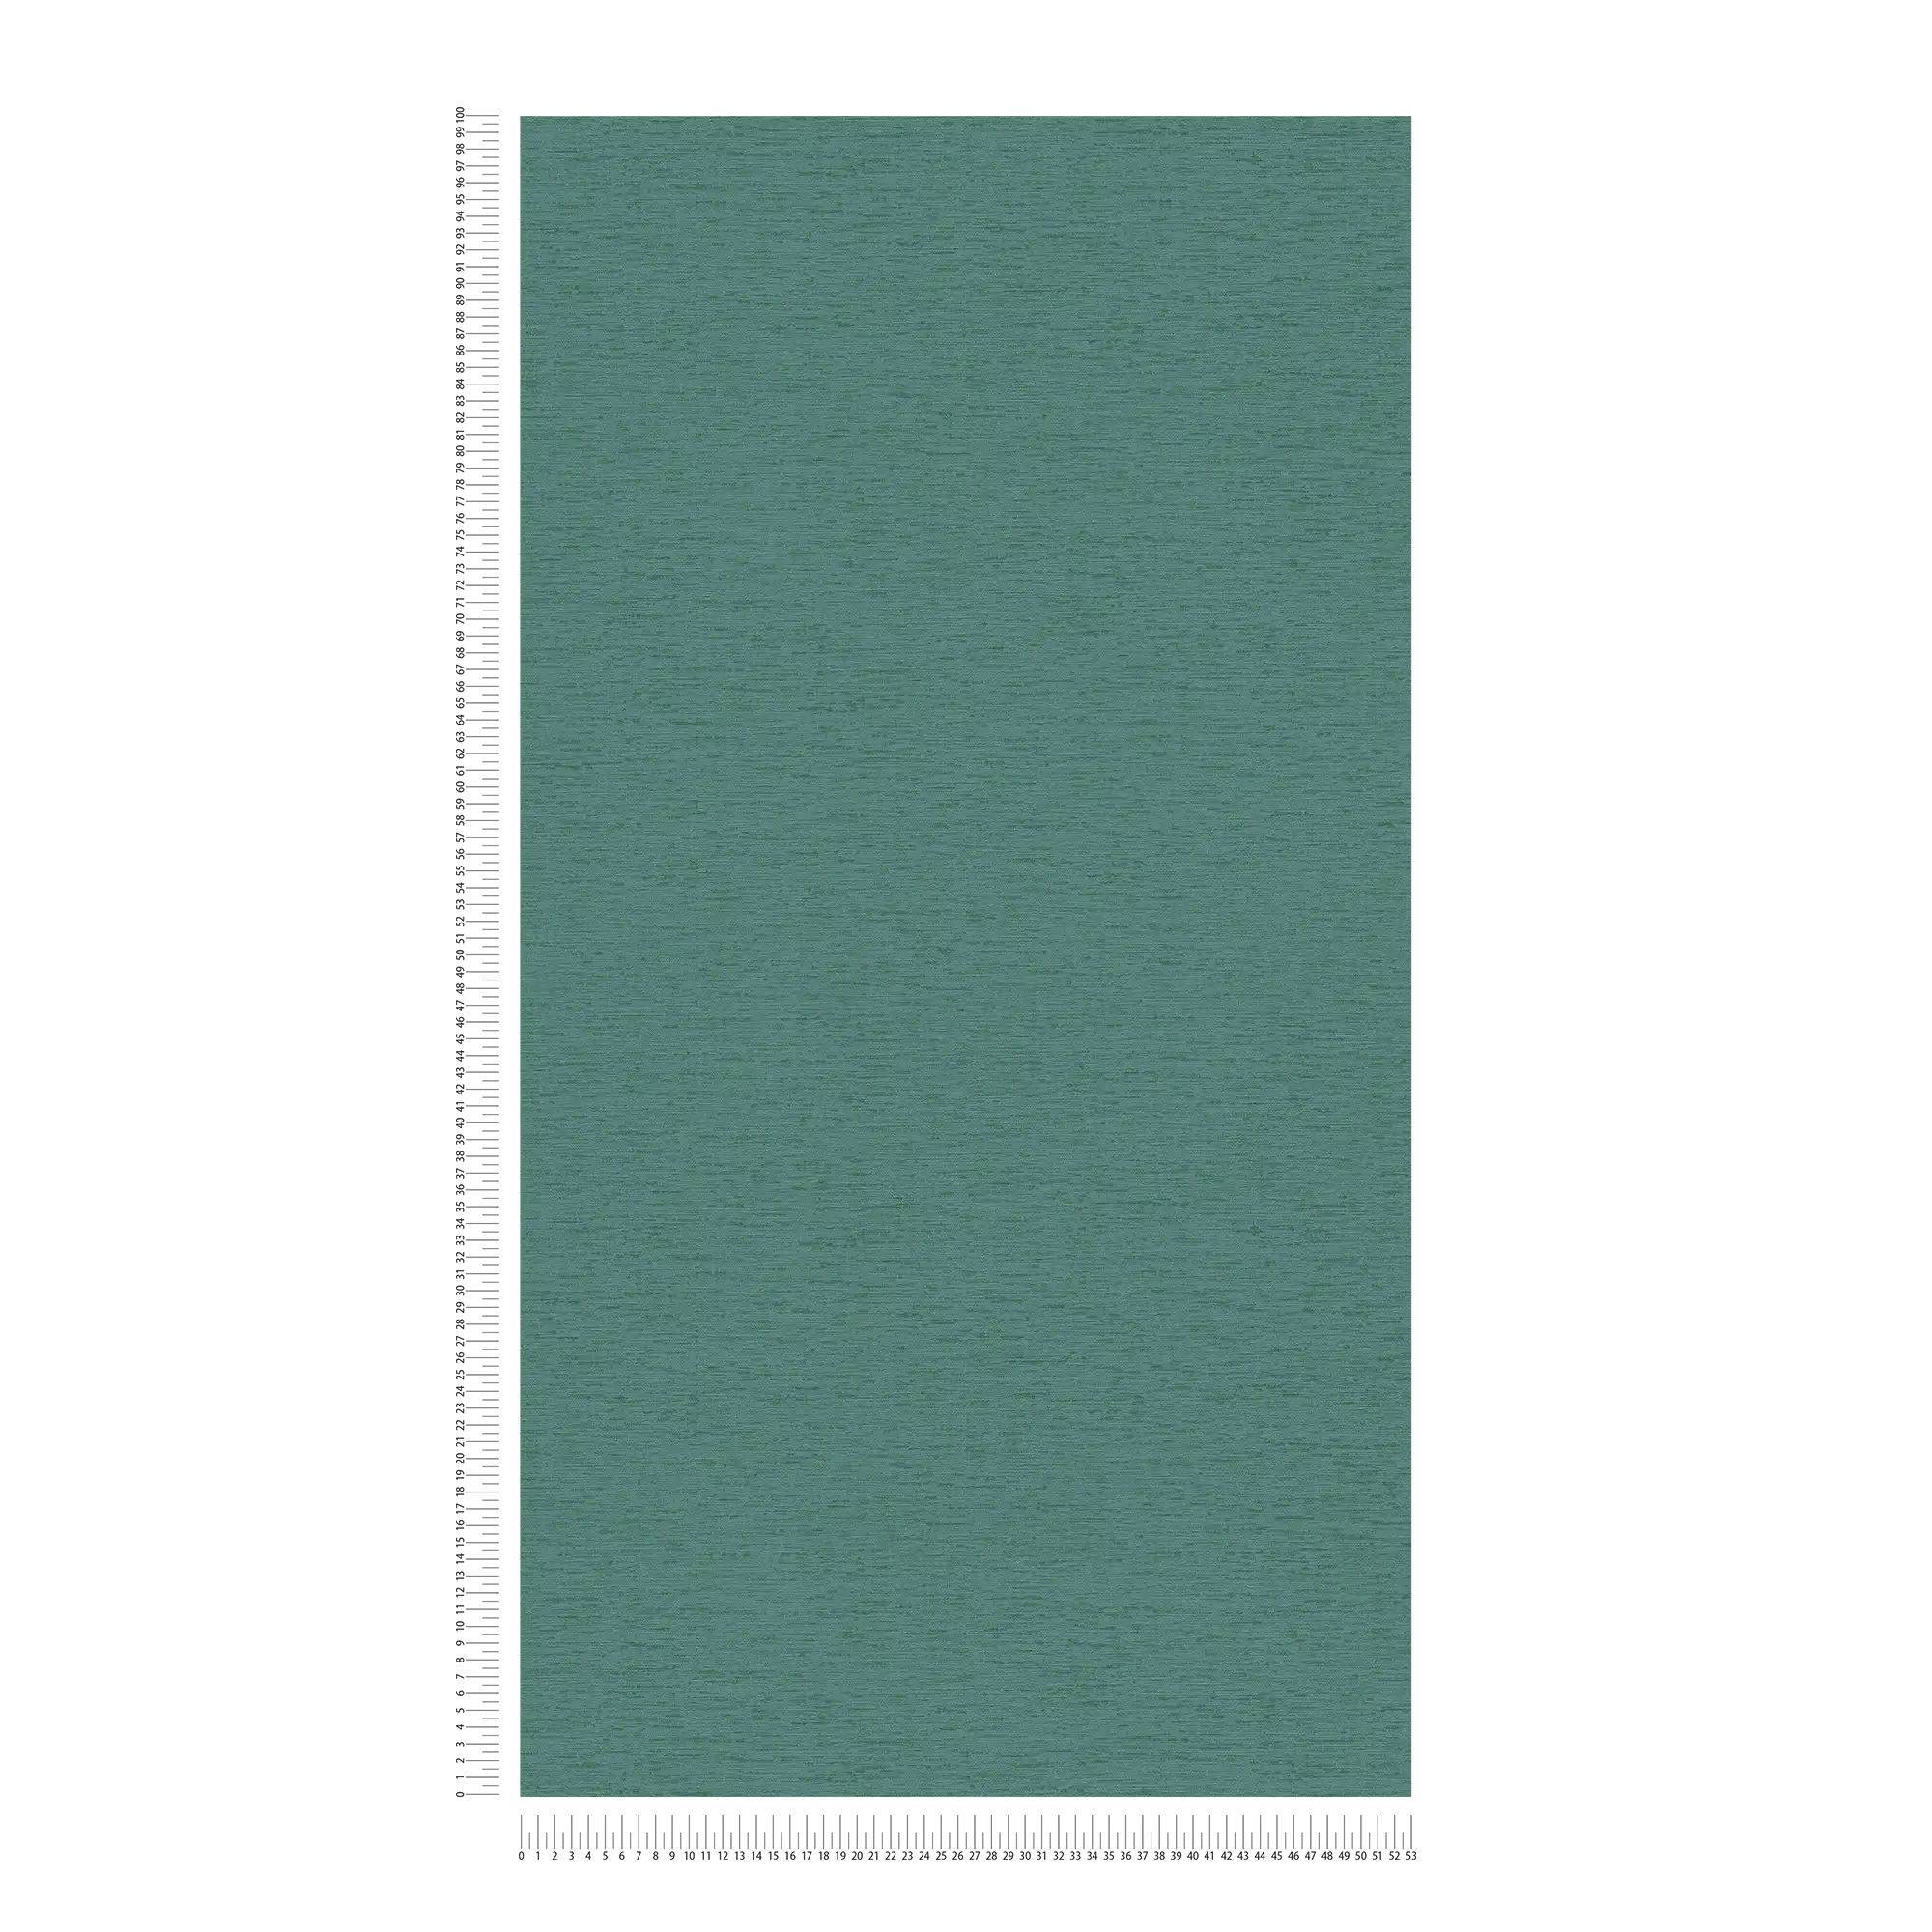             papier peint en papier intissé uni à structure tissée, mat - pétrole, vert
        